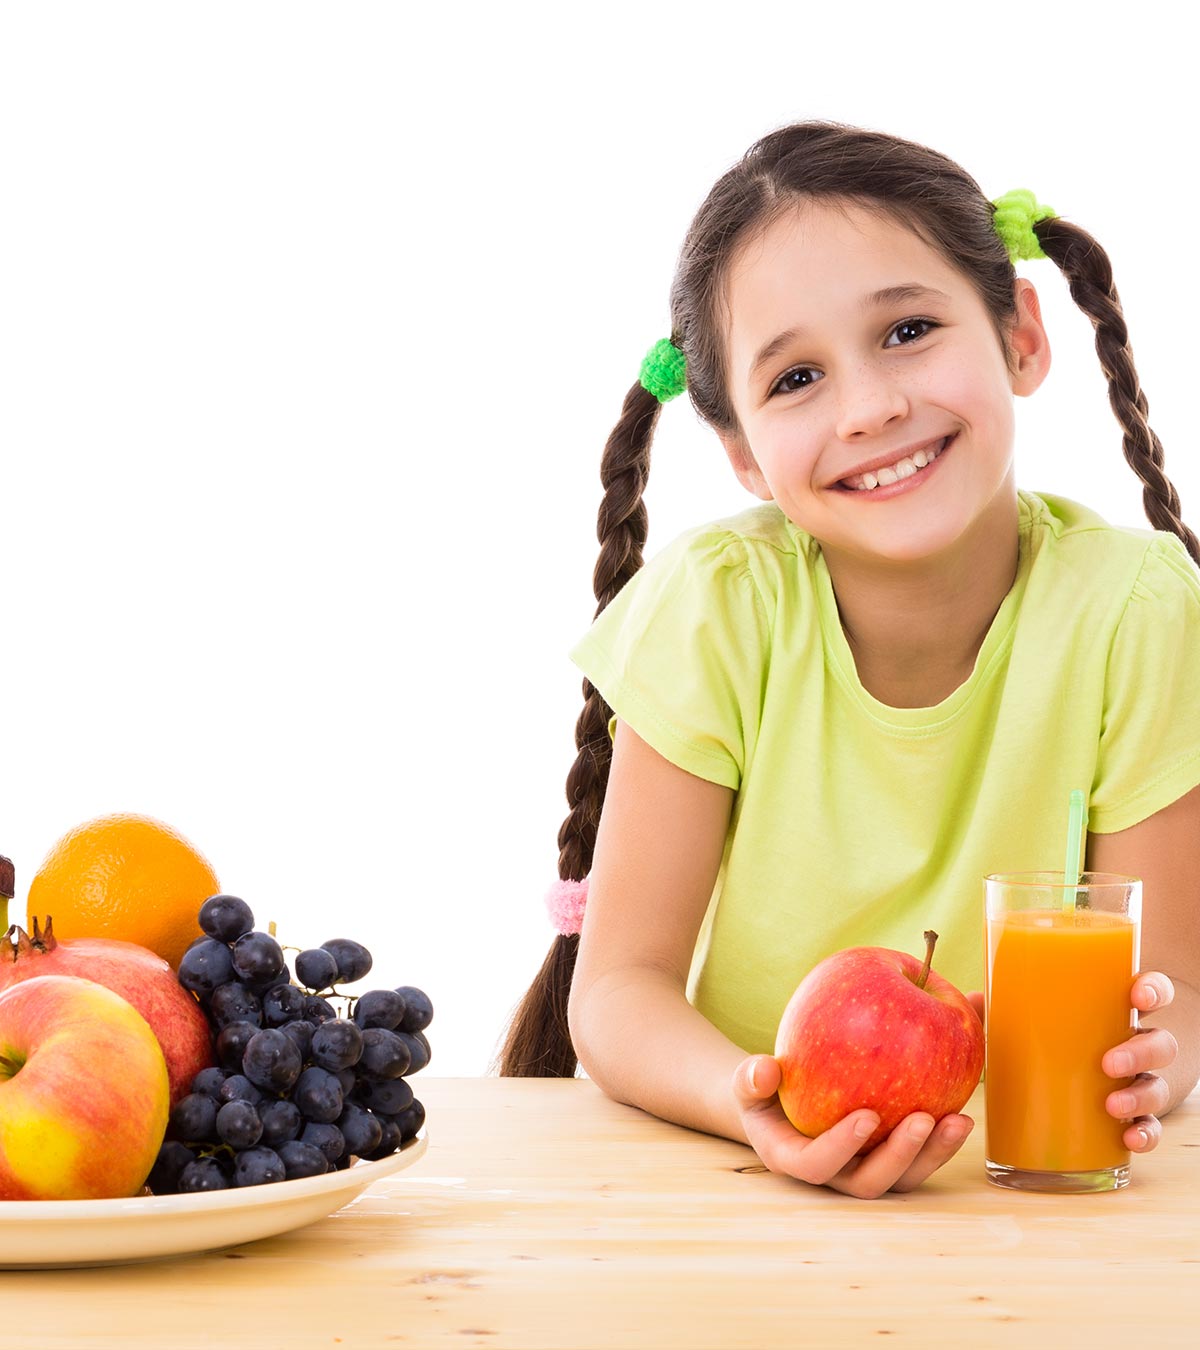 9 Nutritional Benefits Of Apple Cider Vinegar For Kids